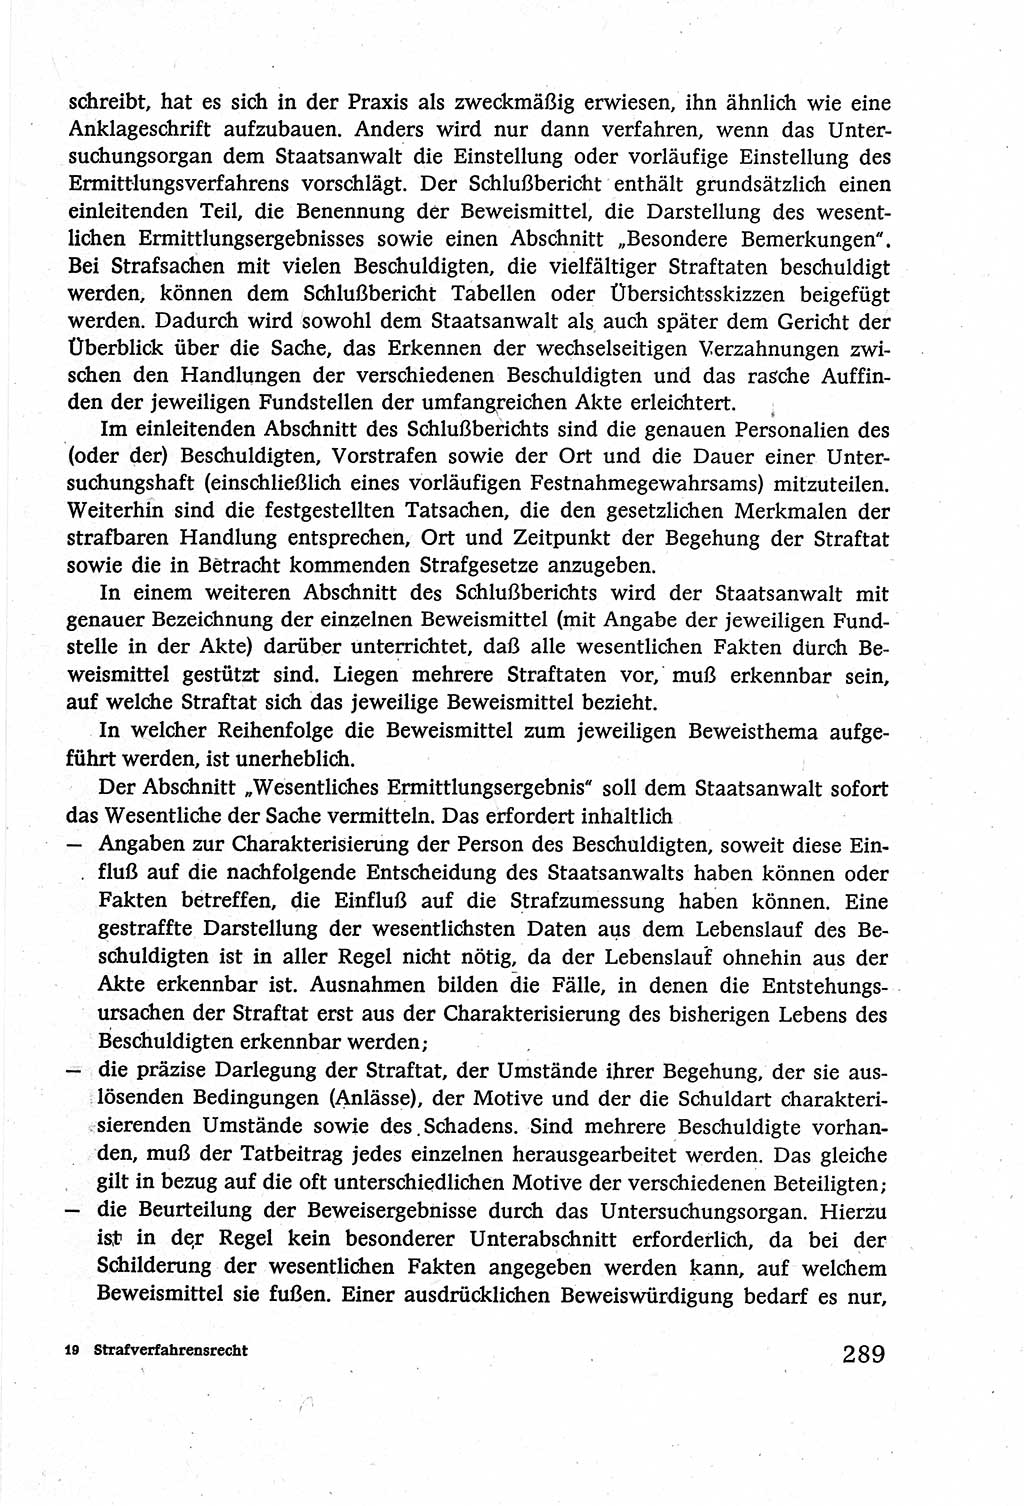 Strafverfahrensrecht [Deutsche Demokratische Republik (DDR)], Lehrbuch 1977, Seite 289 (Strafverf.-R. DDR Lb. 1977, S. 289)